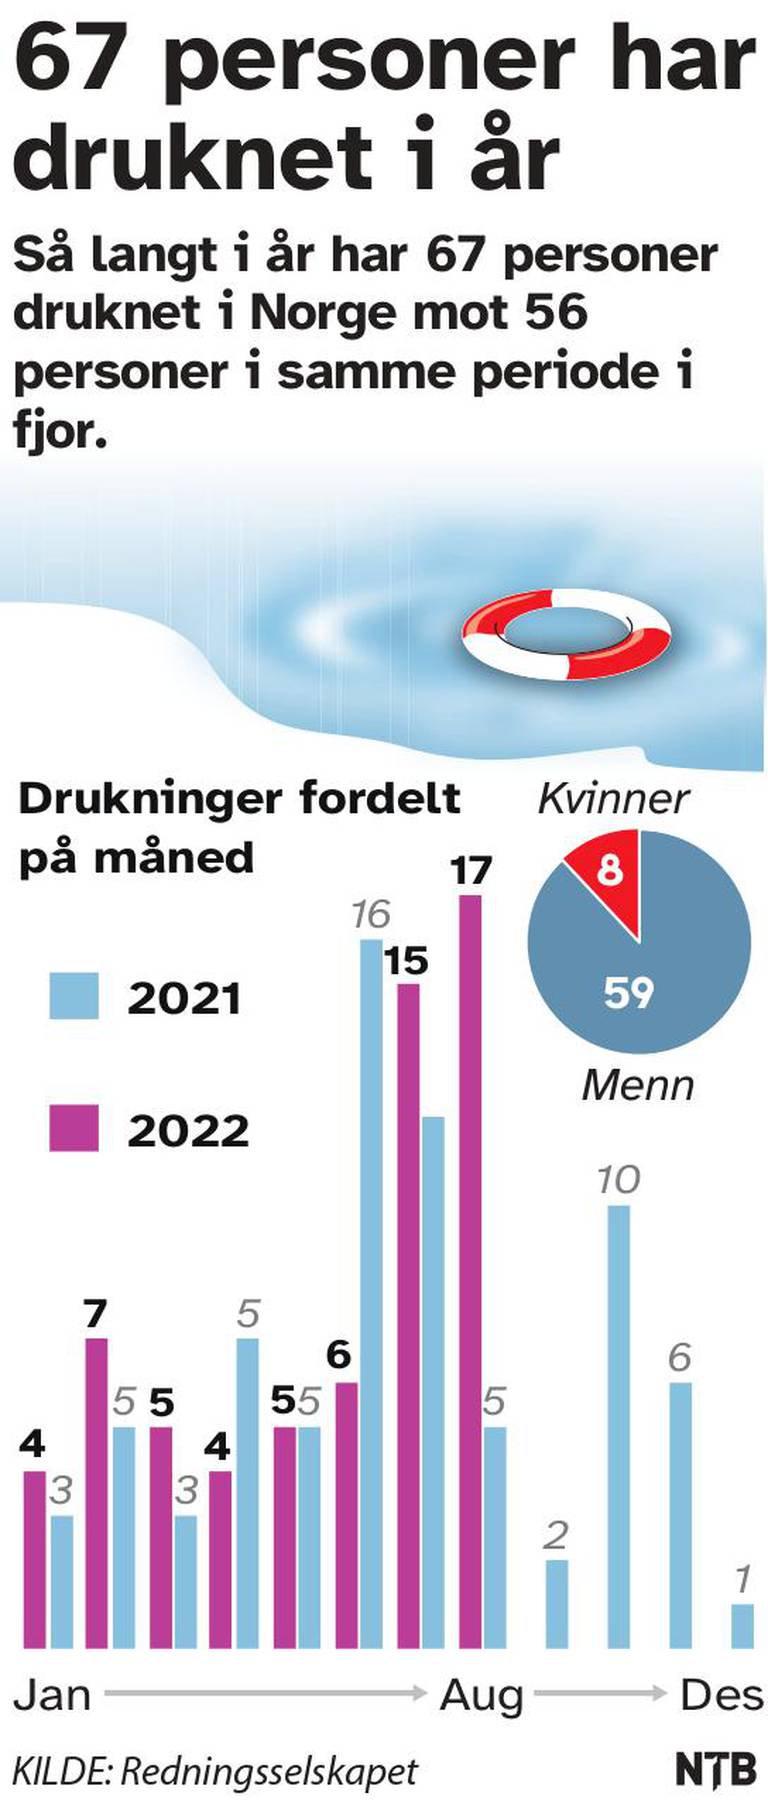 Så langt i år har 67 personer druknet i Norge mot 56 personer i samme periode i fjor.